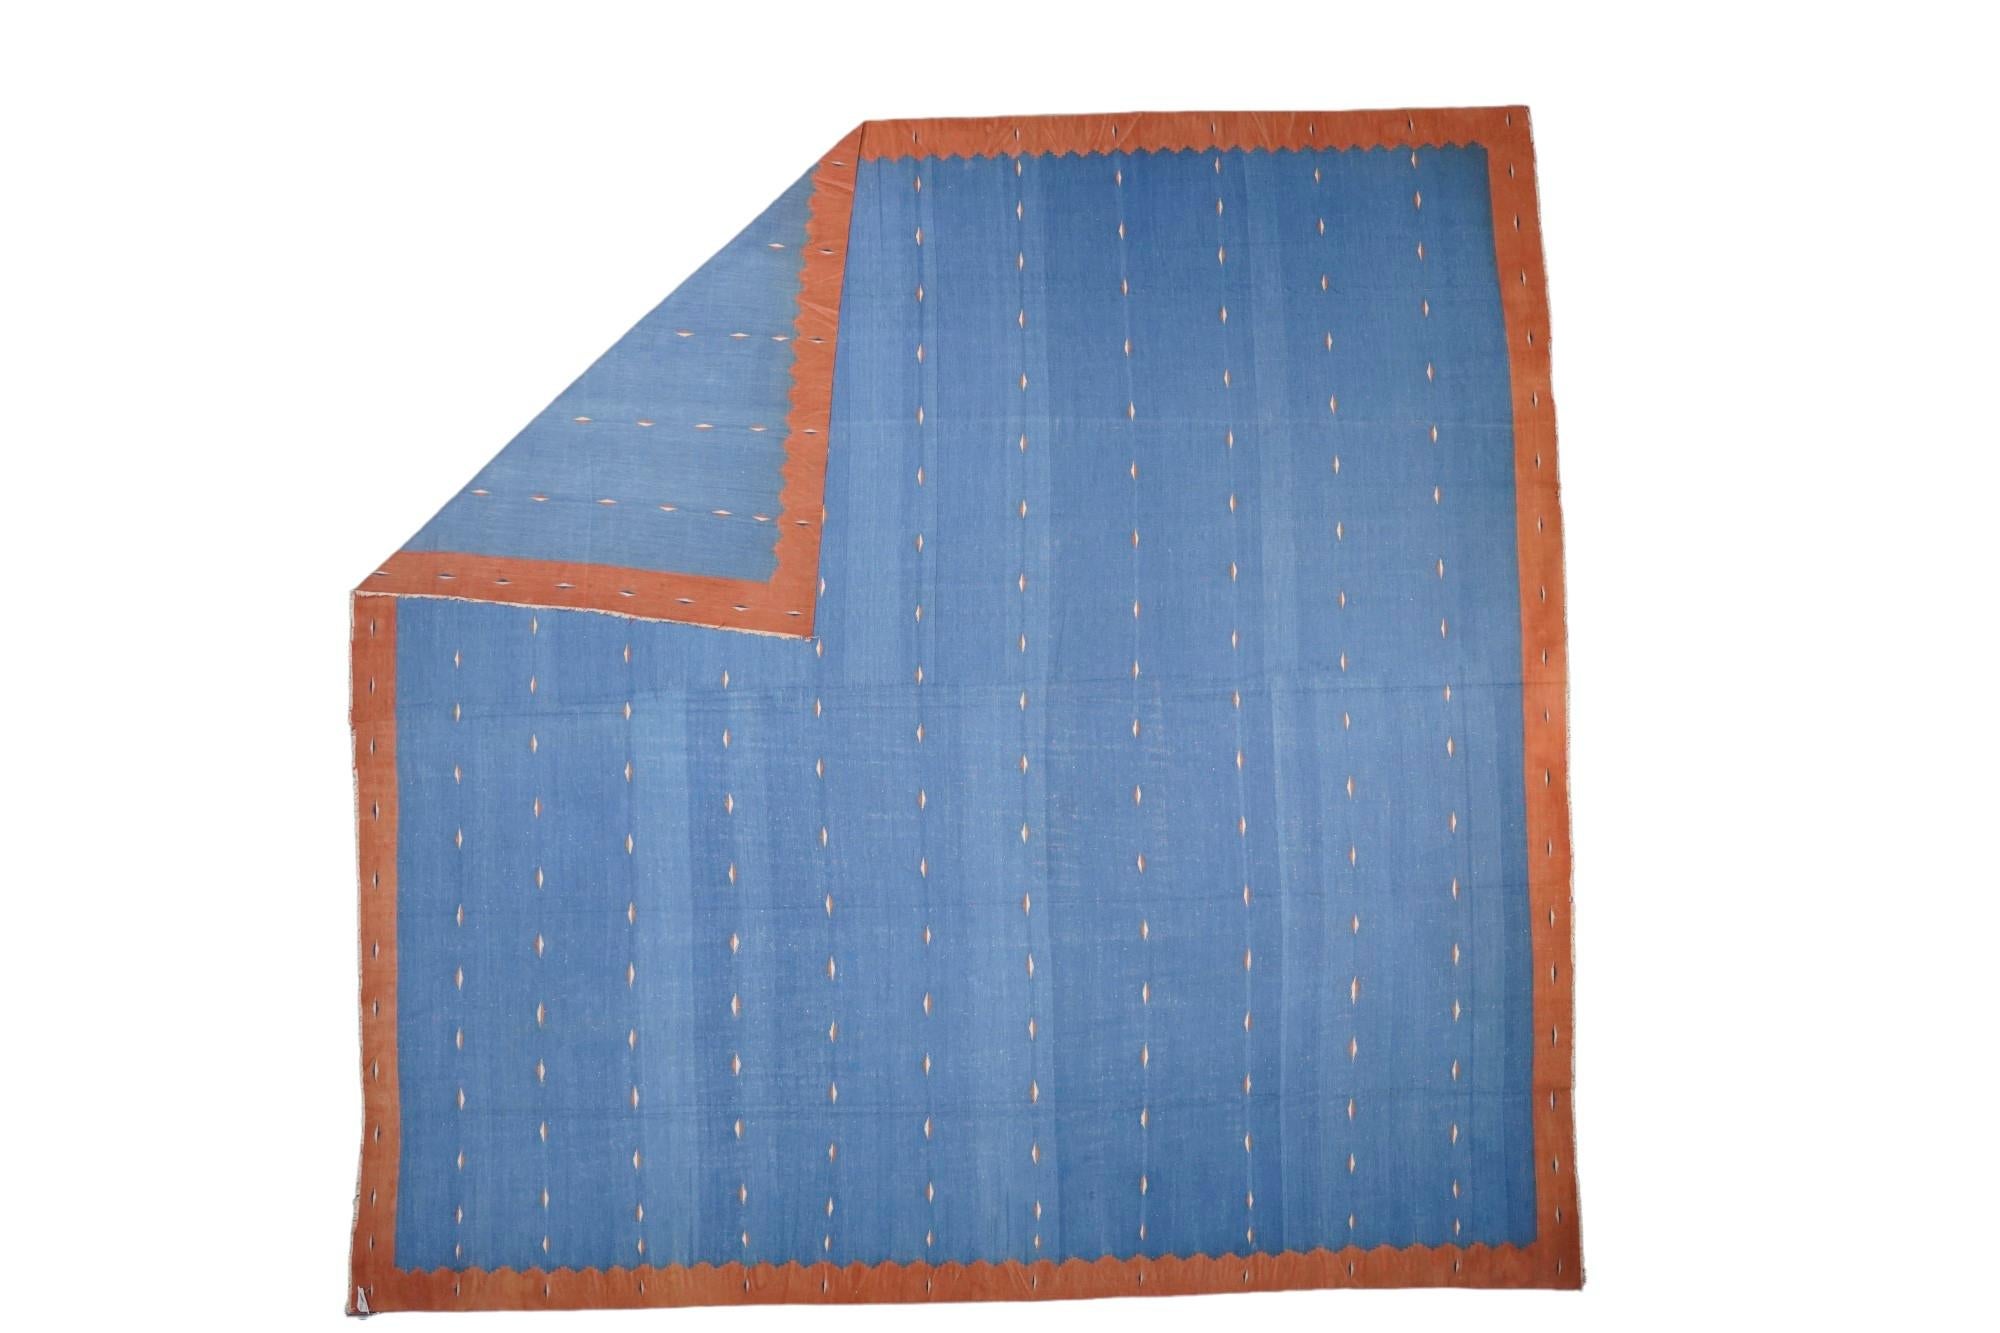 Dieser 13x13 große Teppich ist ein seltener quadratischer Vintage-Dhurrie-Teppich aus einer aufregenden neuen Kuration aus der Mitte des Jahrhunderts von Rug &New Kilim. Das handgewebte Flachgewebe aus Wolle stammt aus Indien (ca. 1950-1960) und